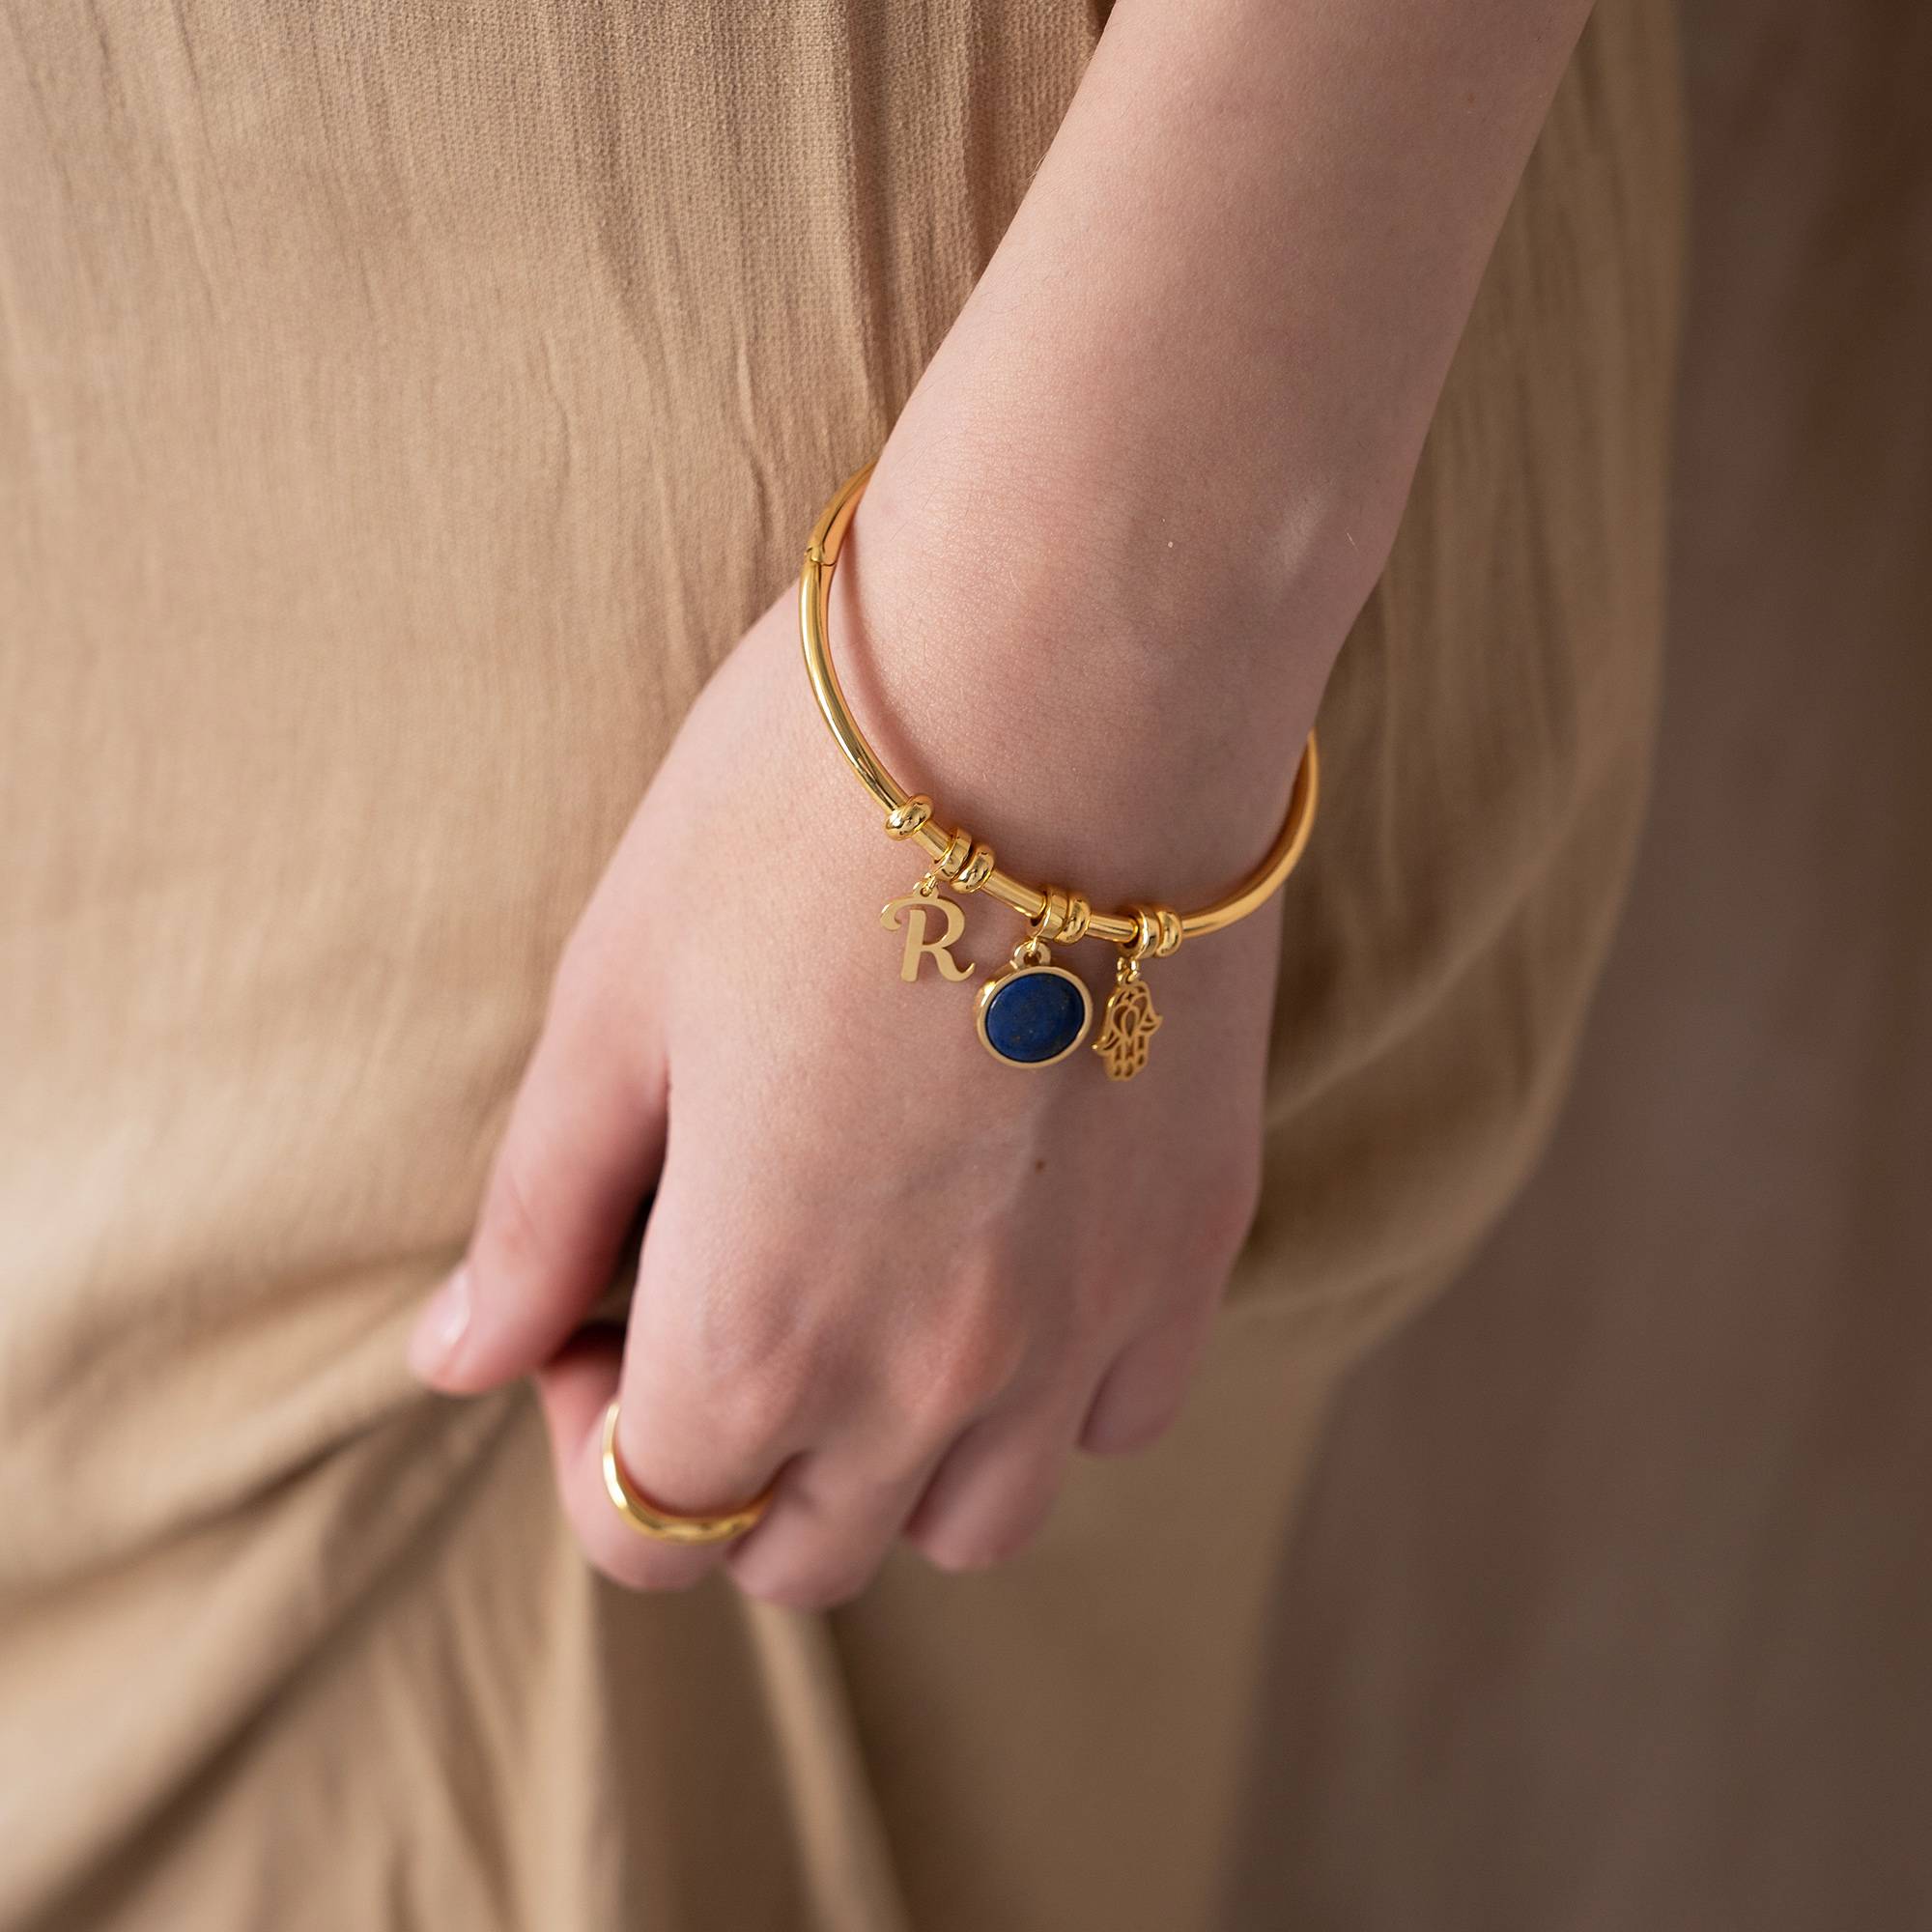 18k Goud Vergulde Symbolische Initiaal Bangle Armband met Halfedelsteen-2 Productfoto